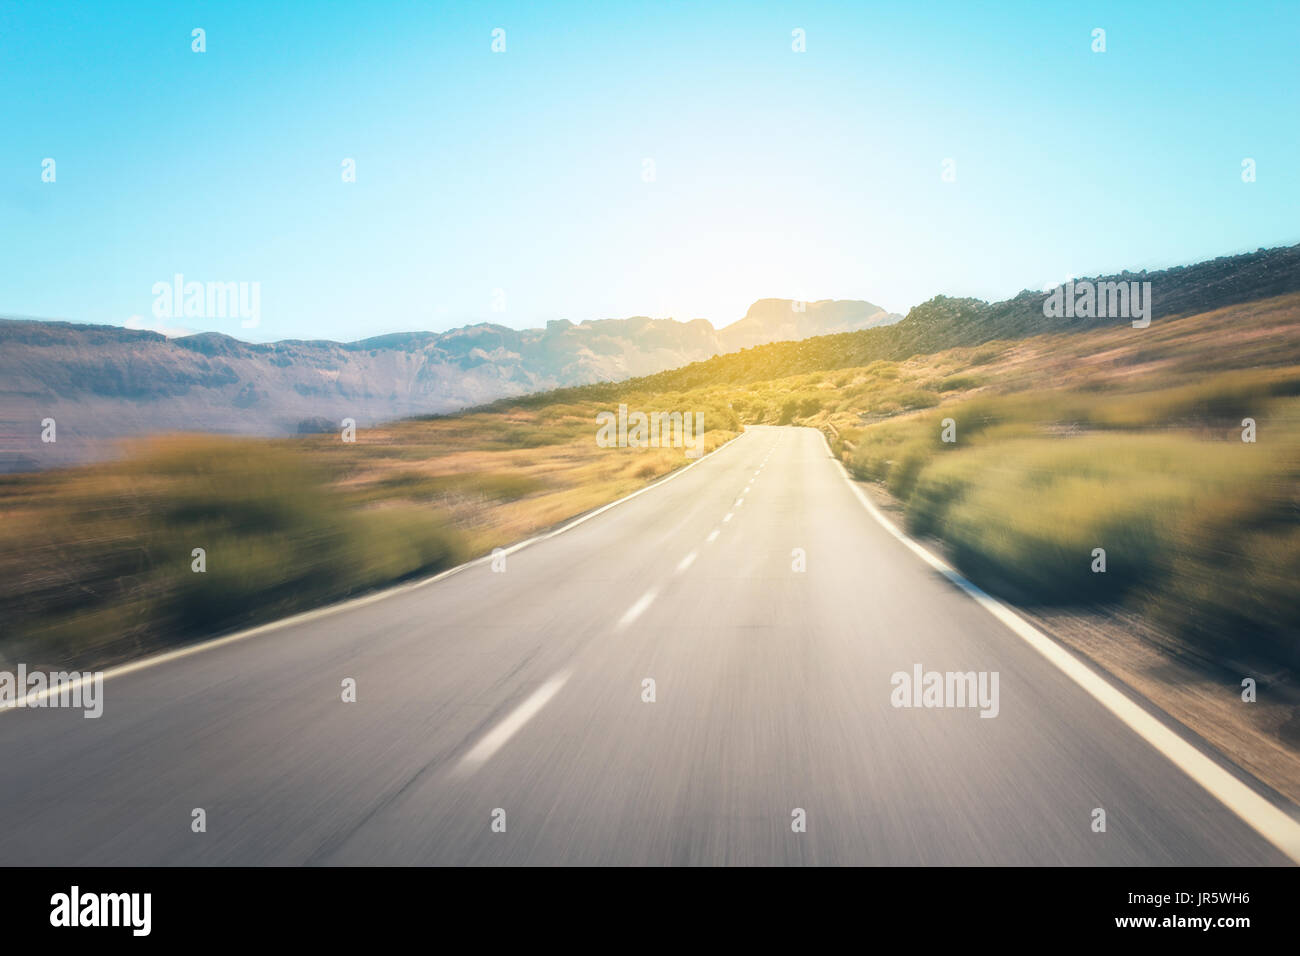 Autobahn-Straße in der Wüstenlandschaft - Bewegungsunschärfe Stockfoto